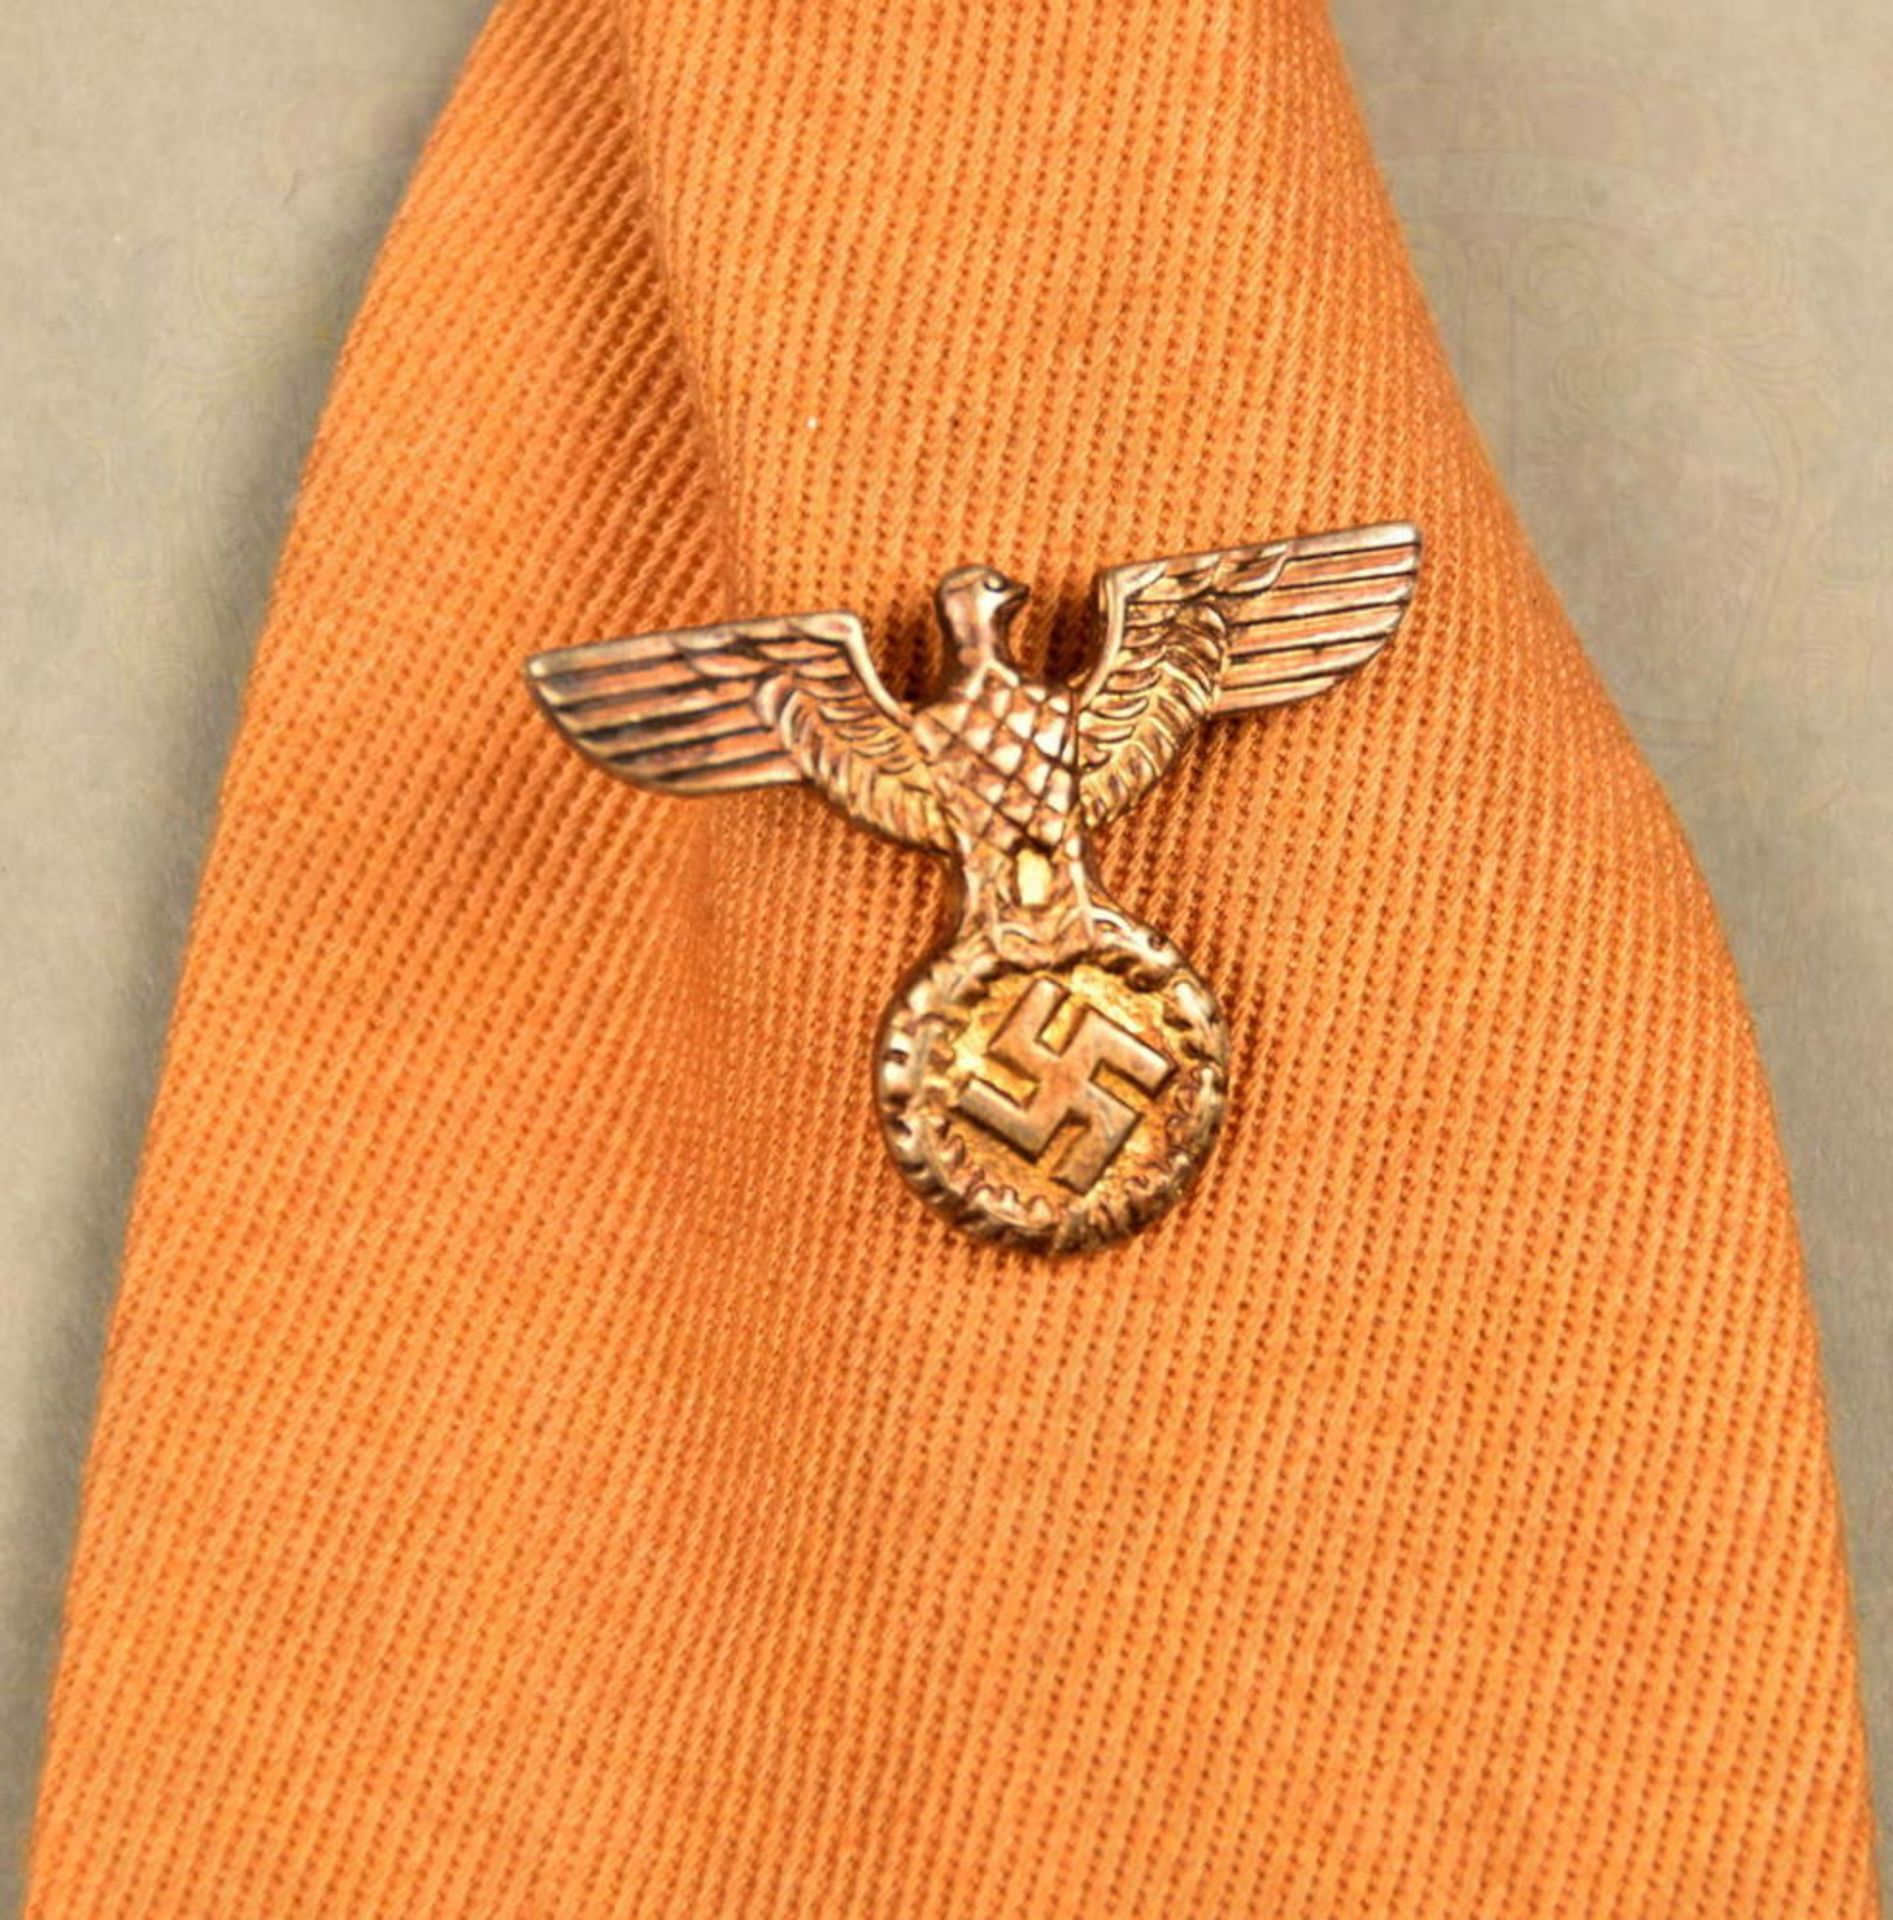 SA-Halsbinde (Krawatte) - Bild 2 aus 4